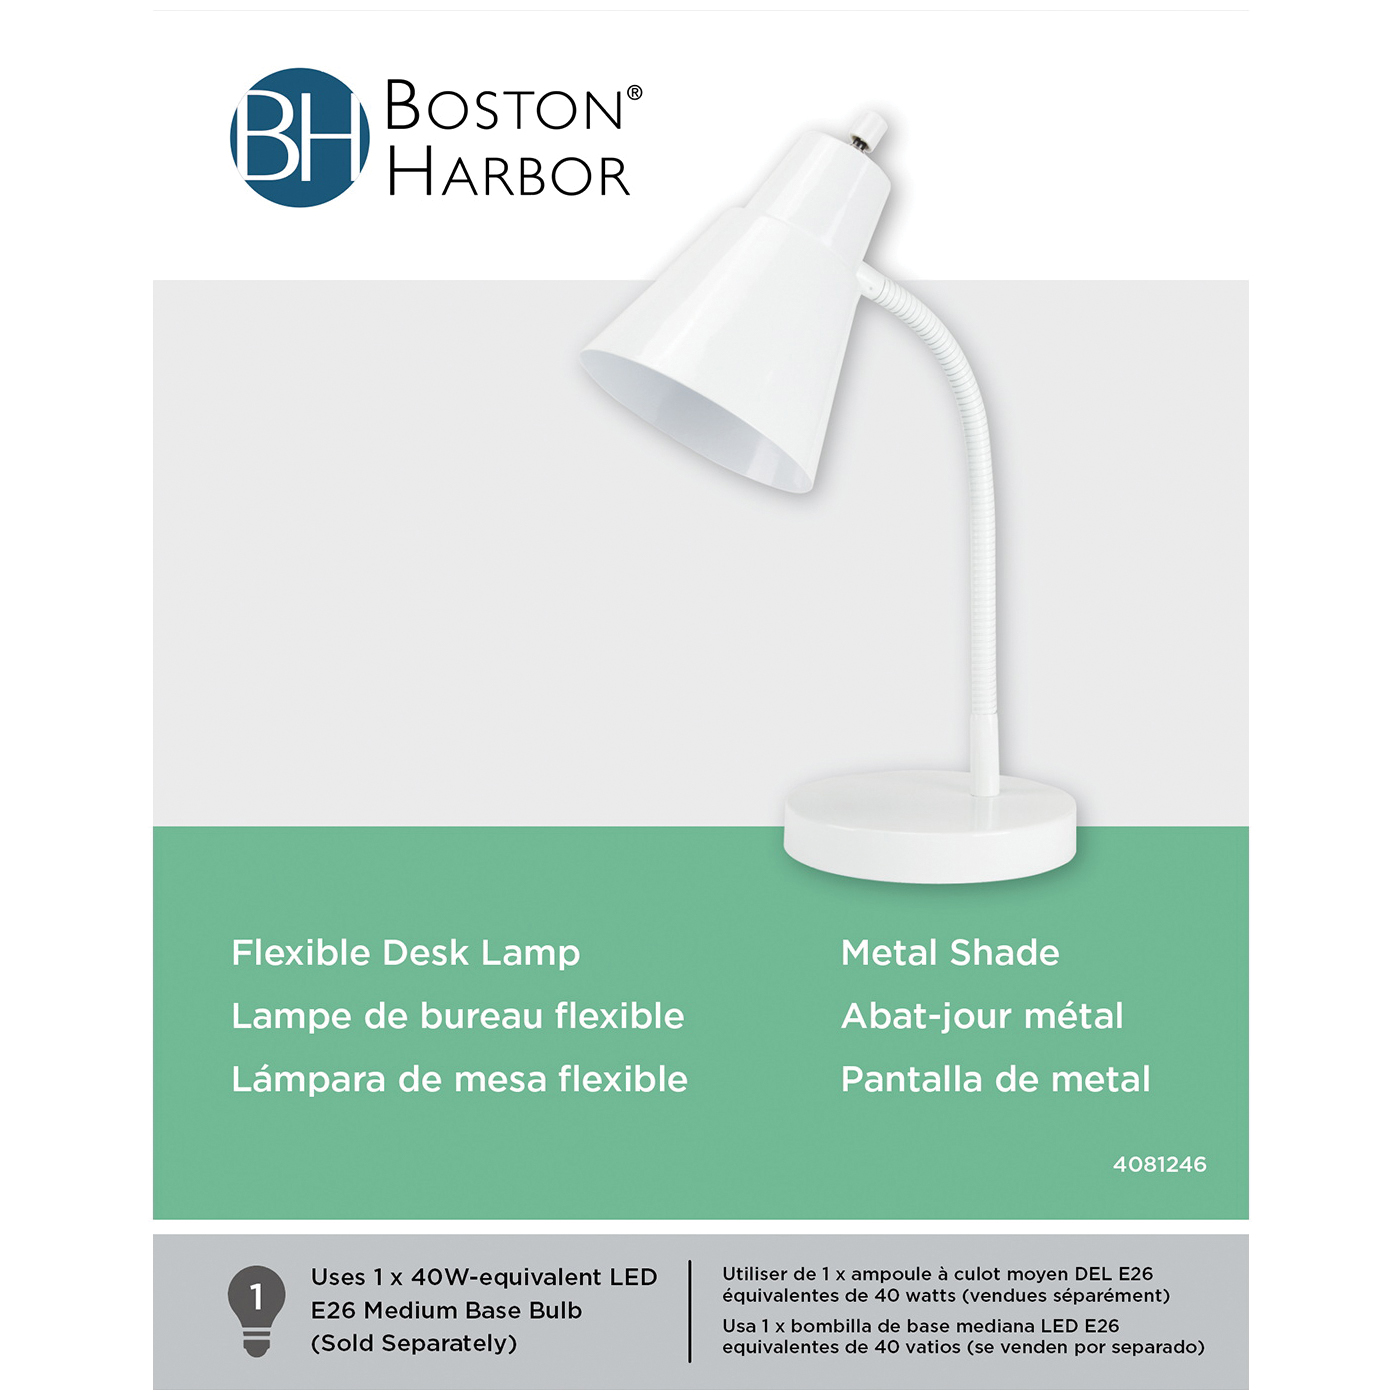 Boston Harbor TL-TB-170-WH-3L Flexible Desk Lamp, 120 V, 60 W, 1-Lamp, CFL Lamp, White Fixture, White - 2